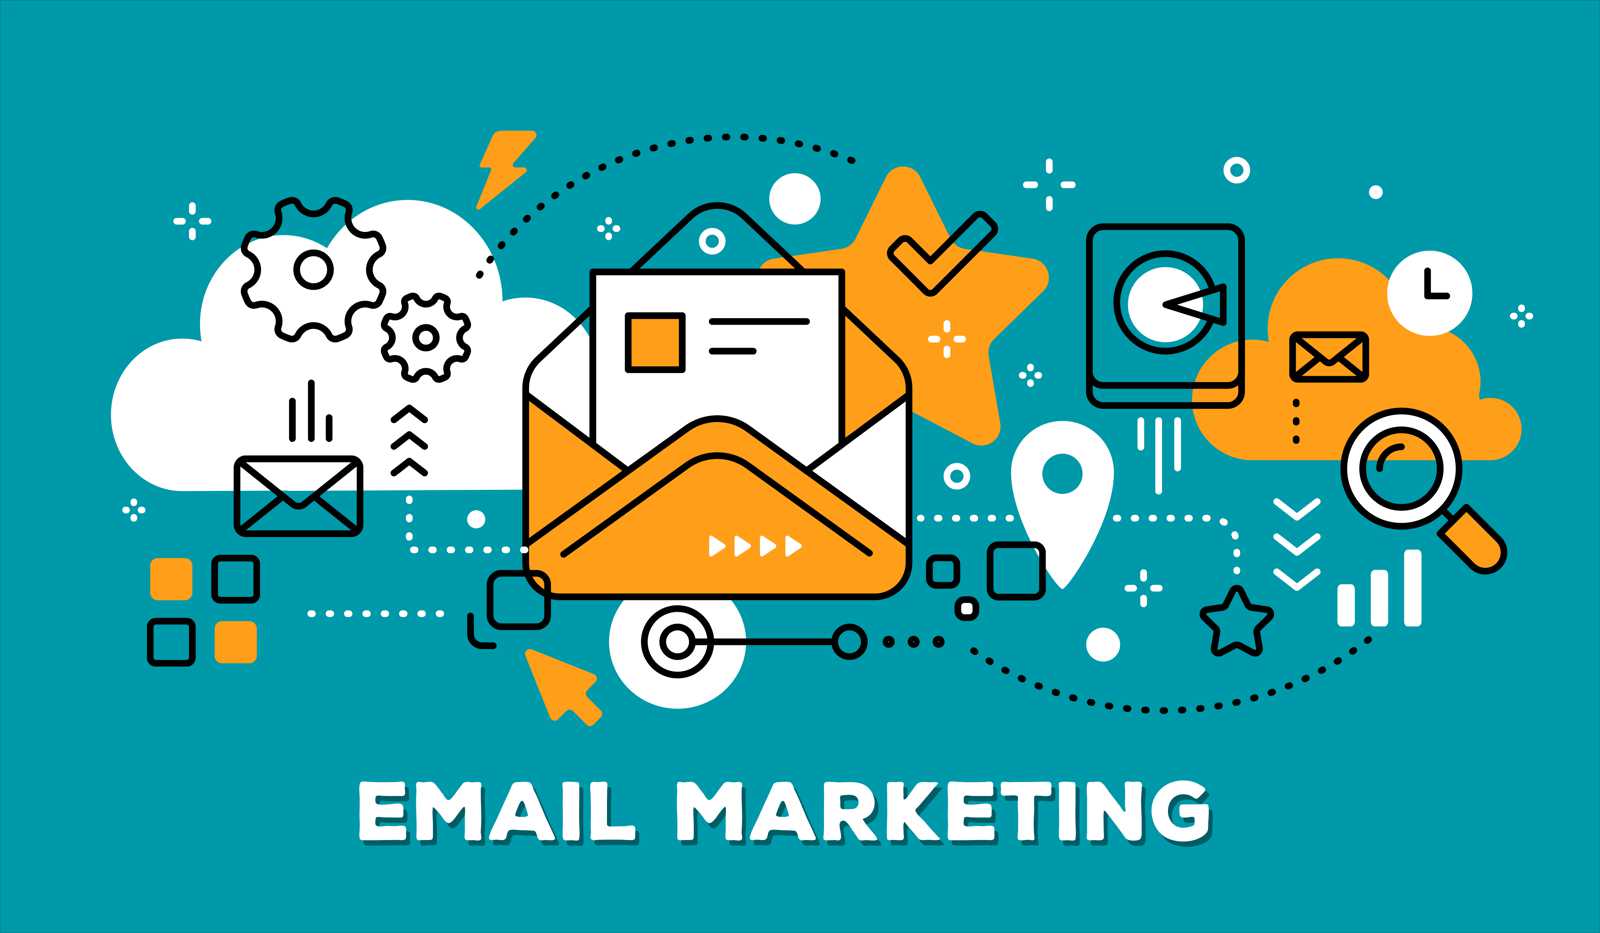 Cum sa pornesti o campanie de email marketing? - 5 pasi simpli